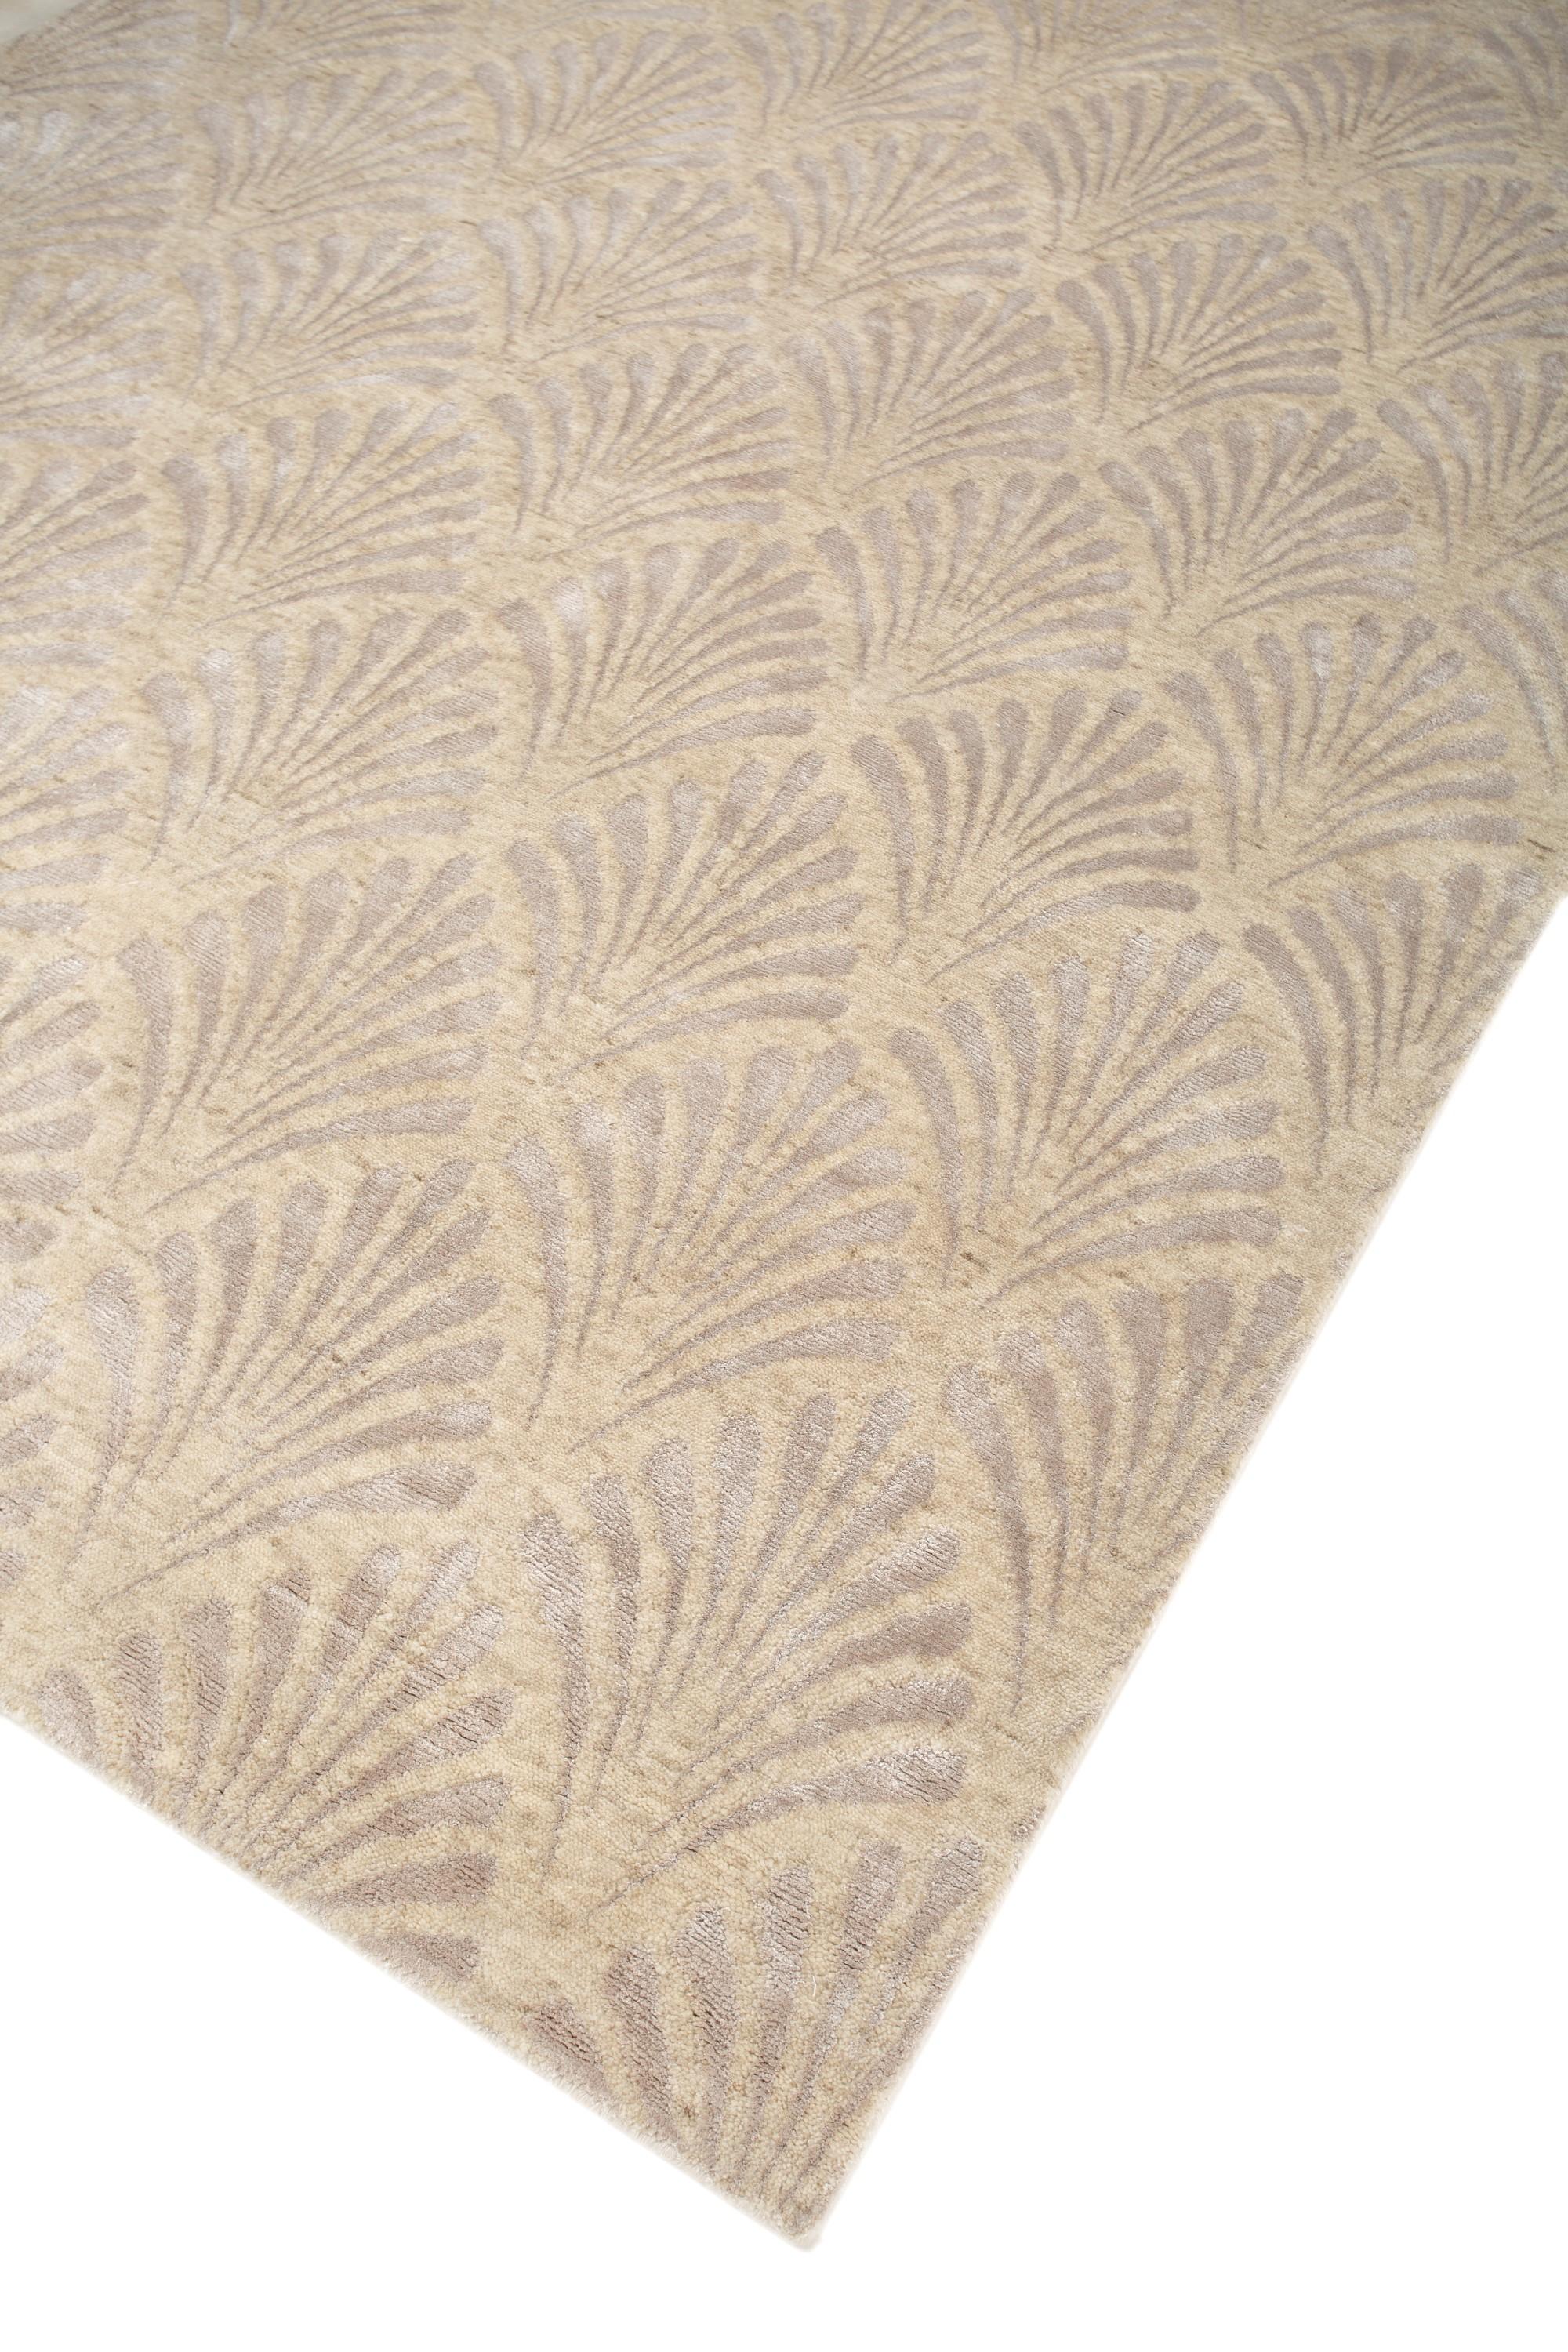 Serenity Bliss Medium Tan & Weiß 180X270 cm Handgeknüpfter Teppich (Moderne) im Angebot